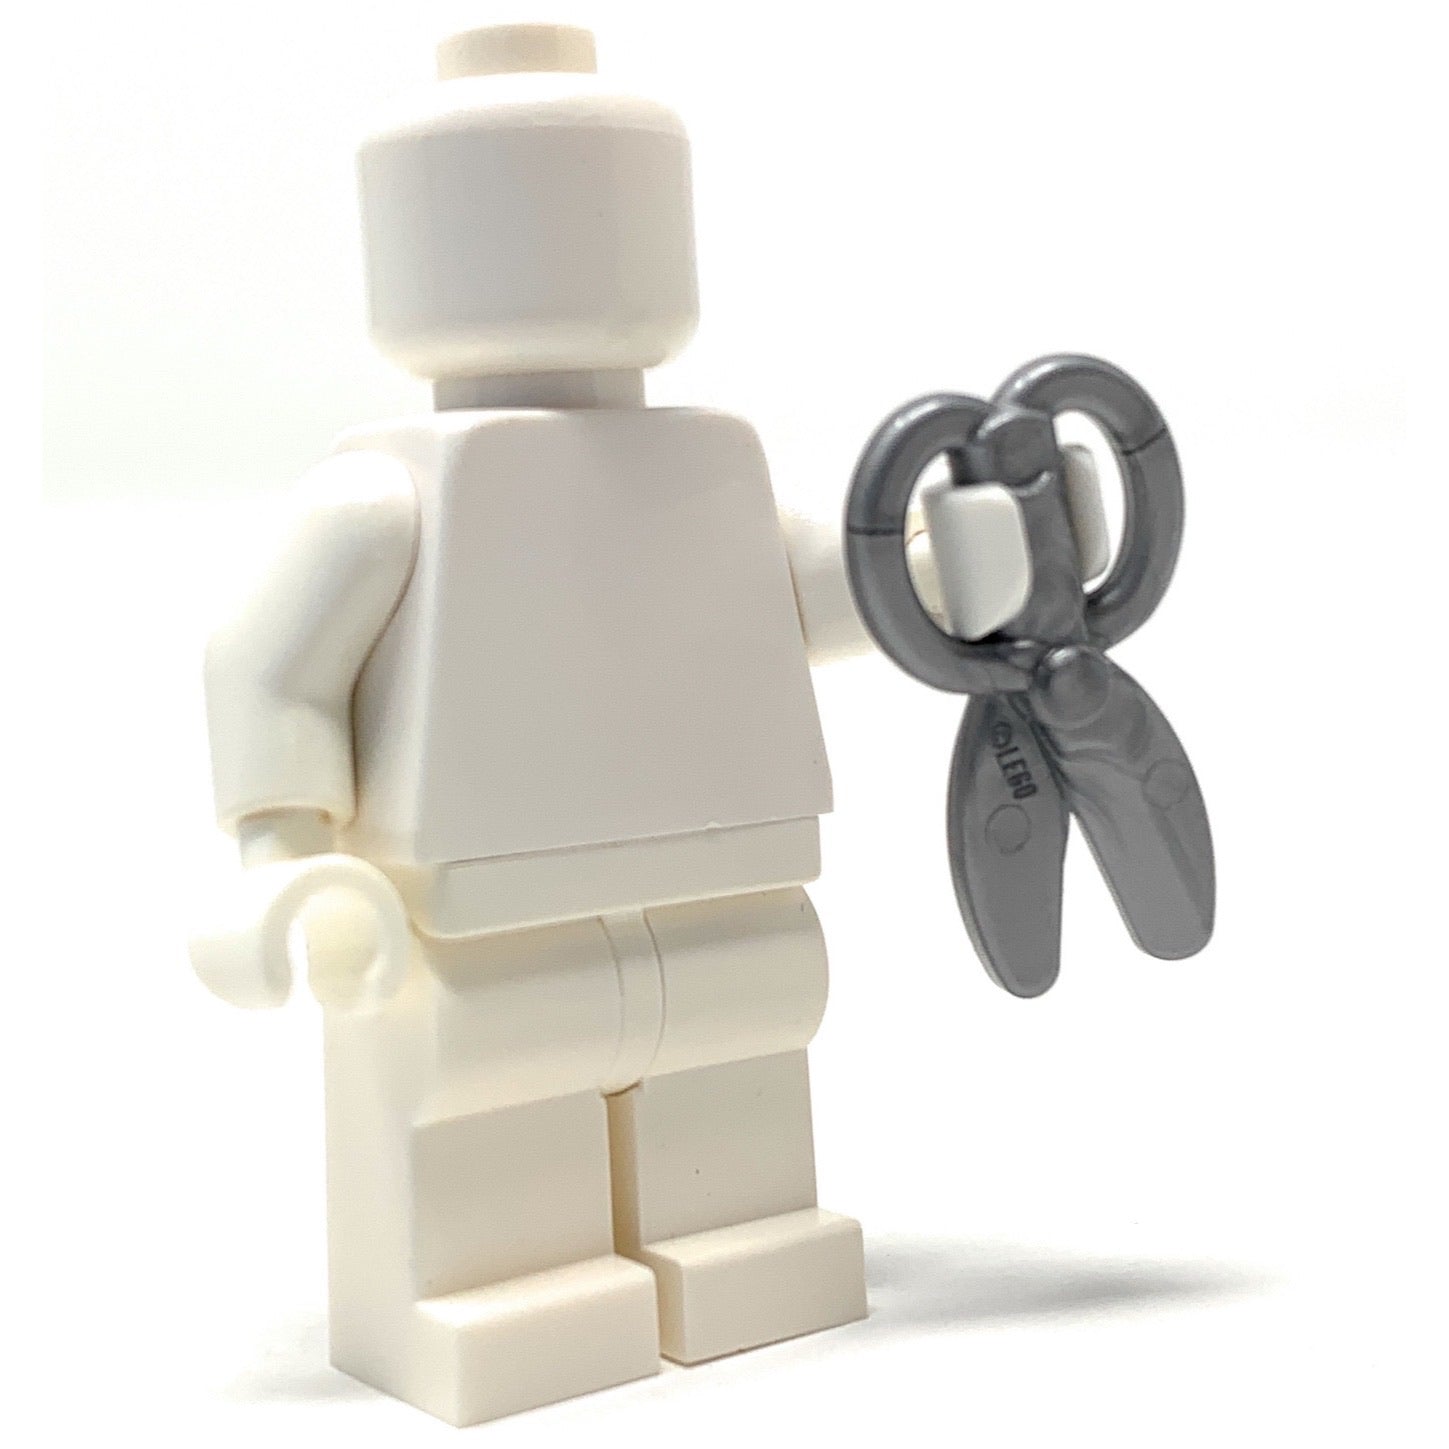 Scissors - Official LEGO® Part